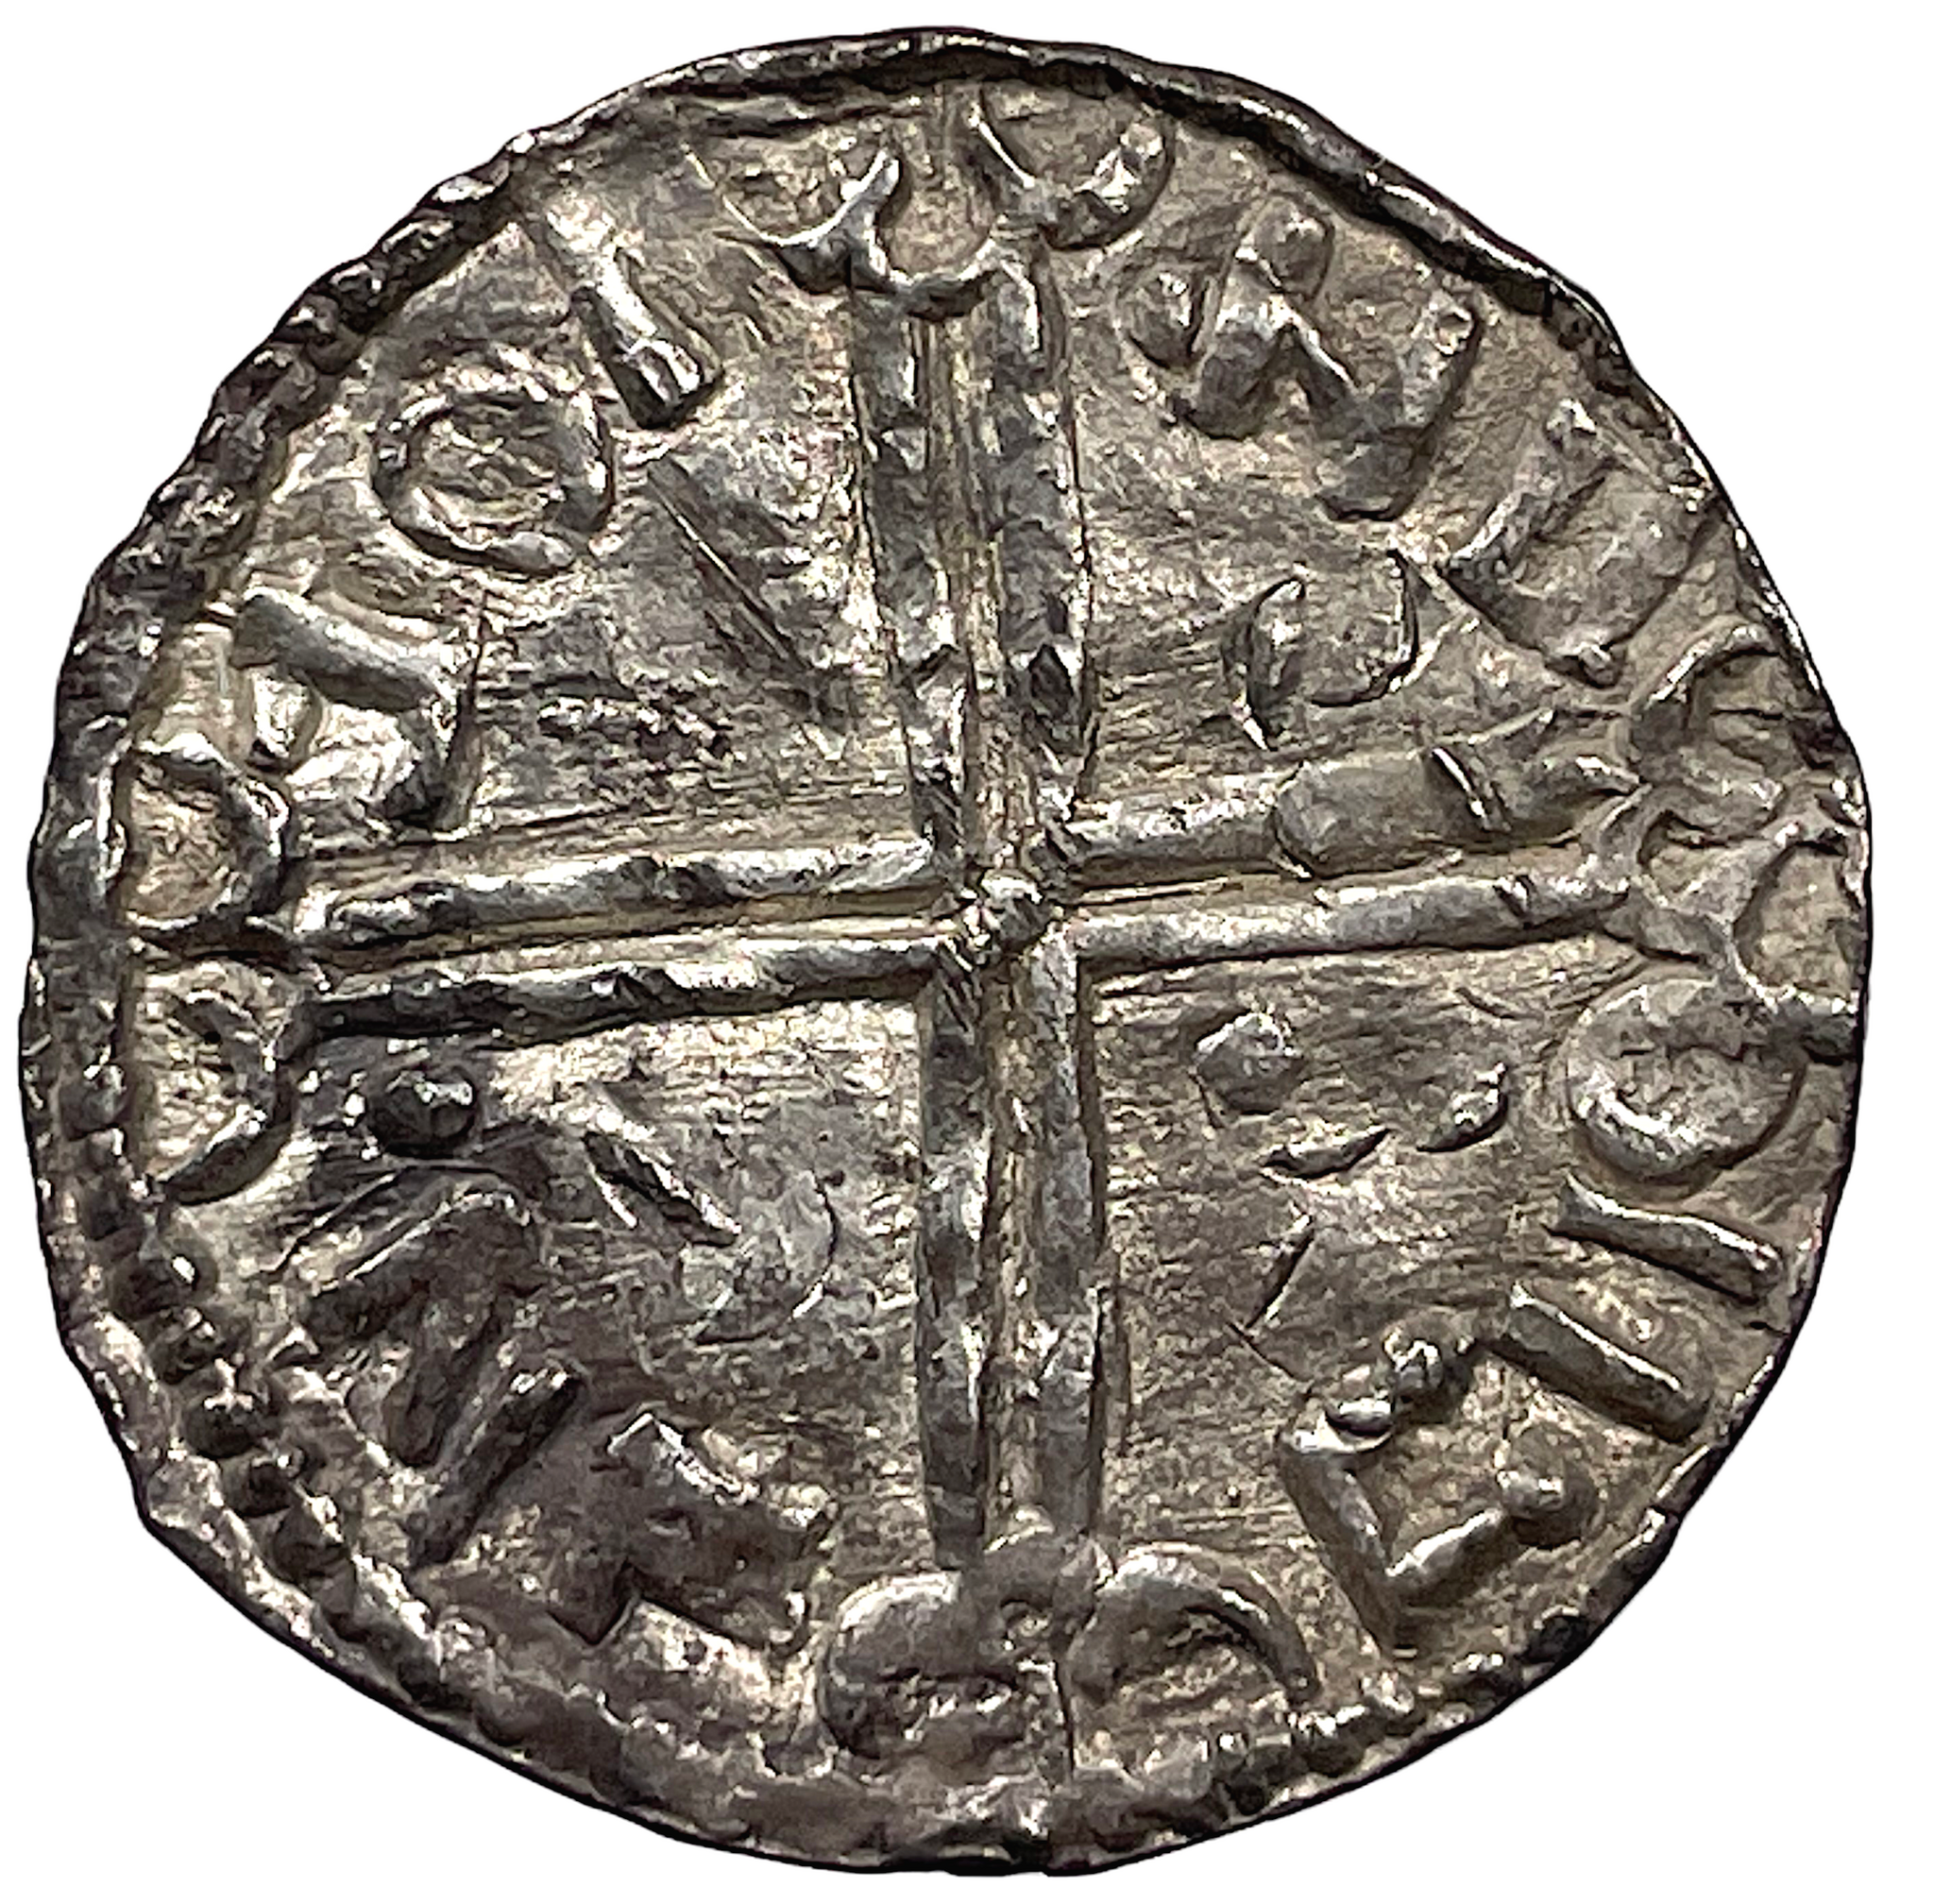 Olof Skötkonung ca 995-1022, Sigtuna Penning - Sveriges första myntningsperiod - Long Cross - Mycket sällsynt